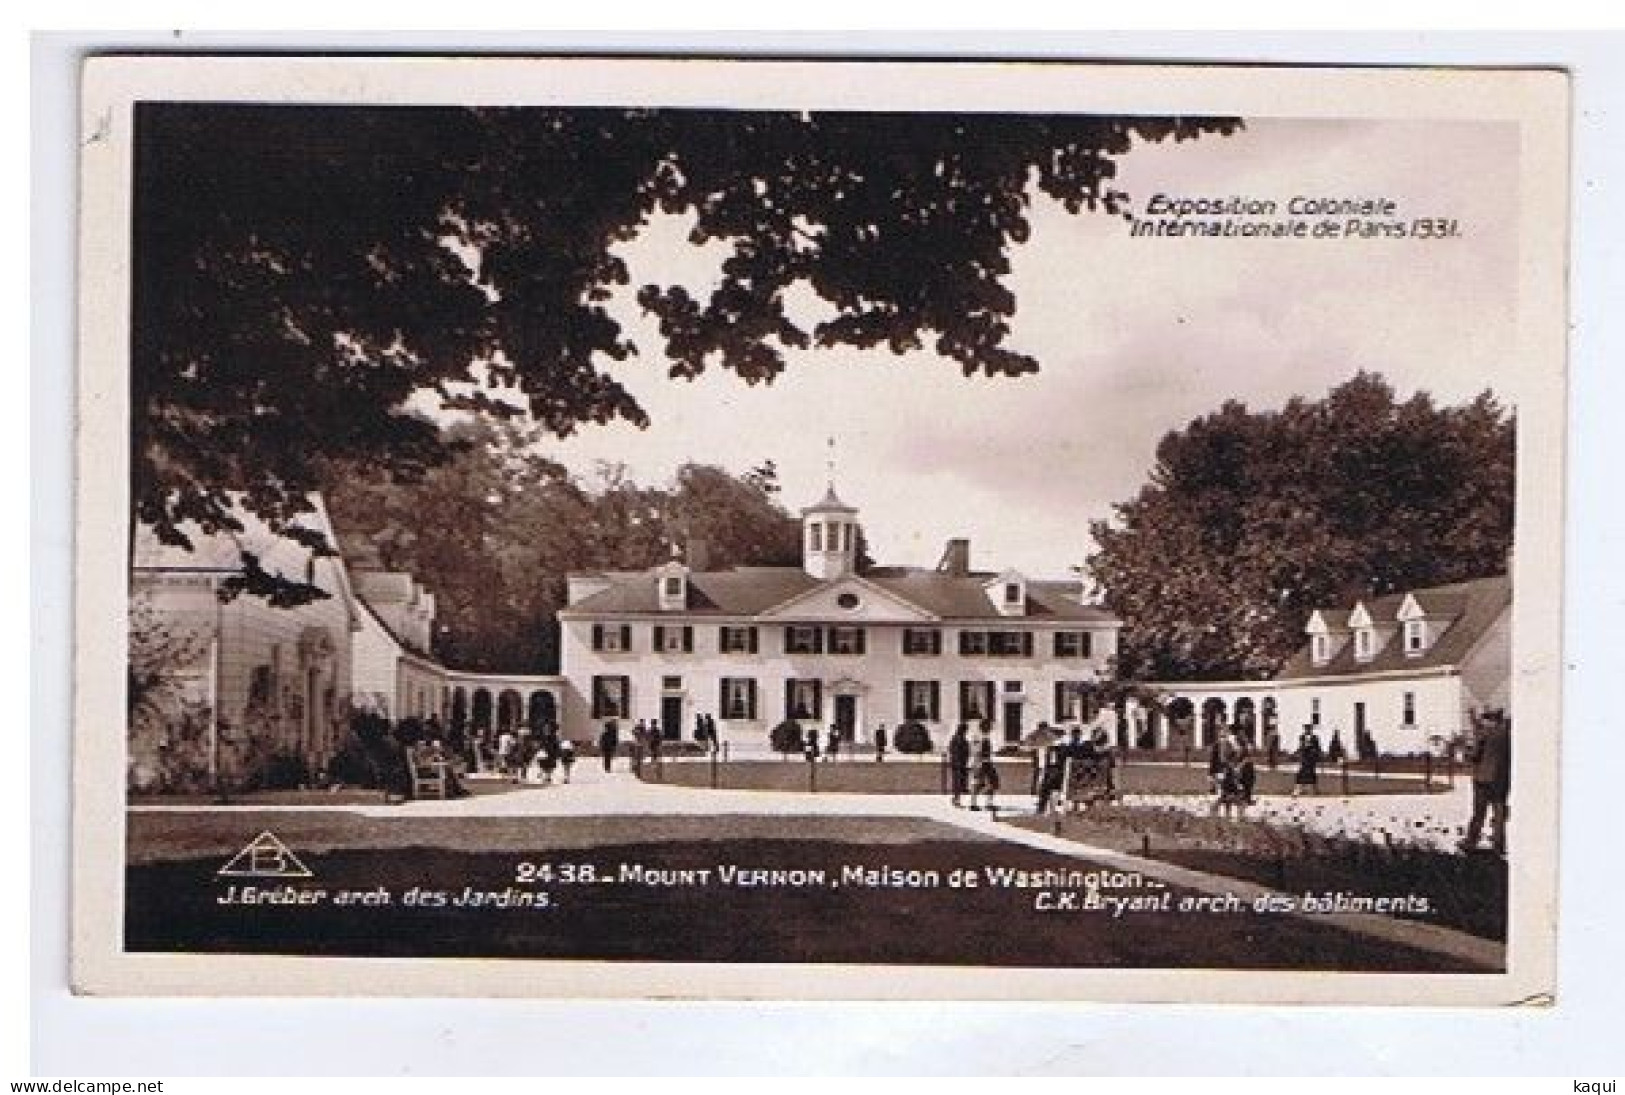 PARIS 1931 - Exposition Coloniale Internationale - Mount Vernon - Maison De Washington - Braun & Cie - N° 2438 - Tentoonstellingen